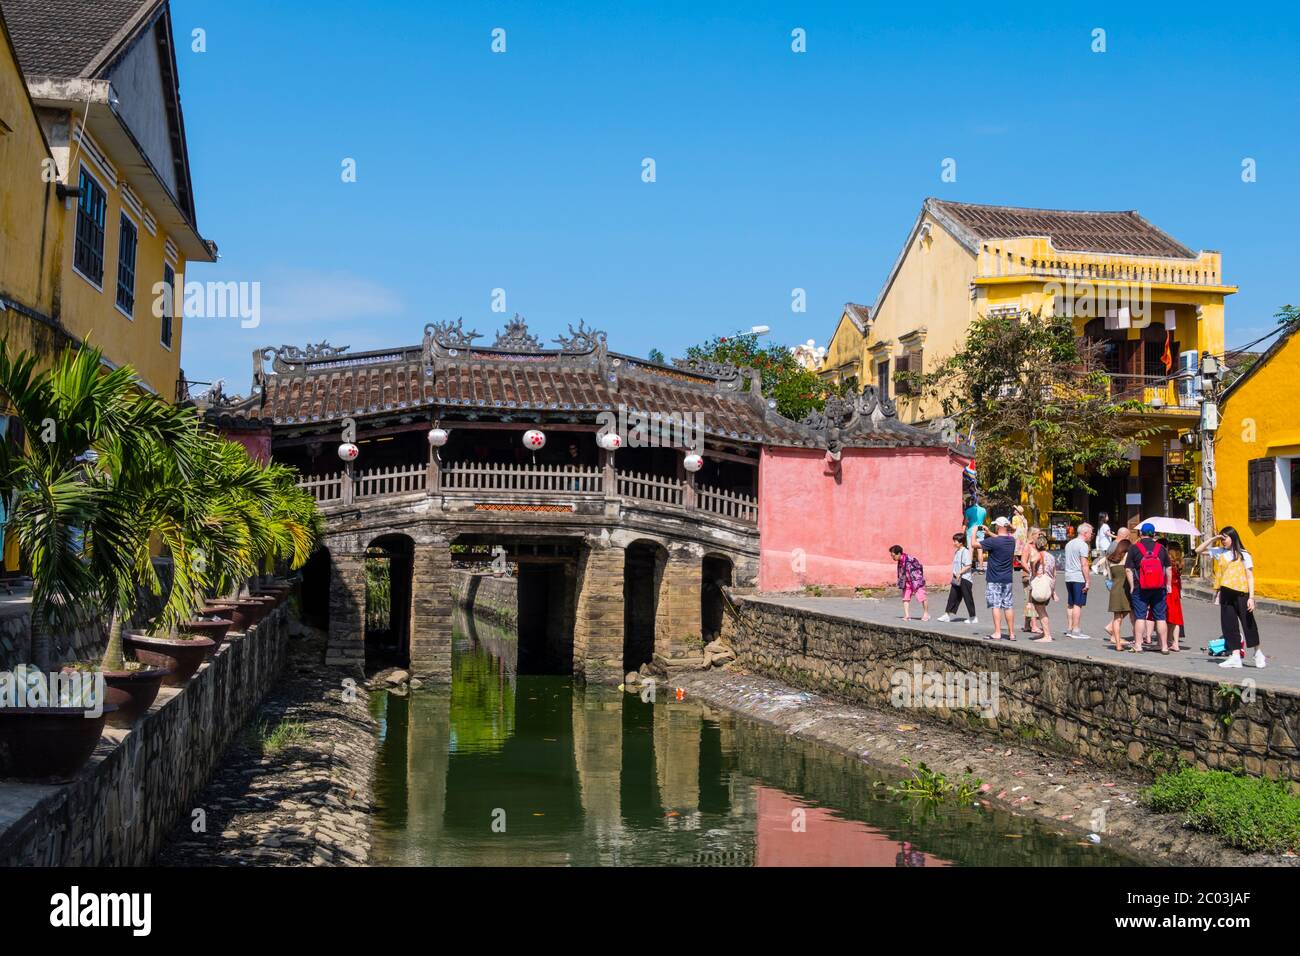 Chùa Cầu Hội An Quảng Nam, Puente cubierto japonés, ciudad vieja, Hoi An, Vietnam, Asia Foto de stock